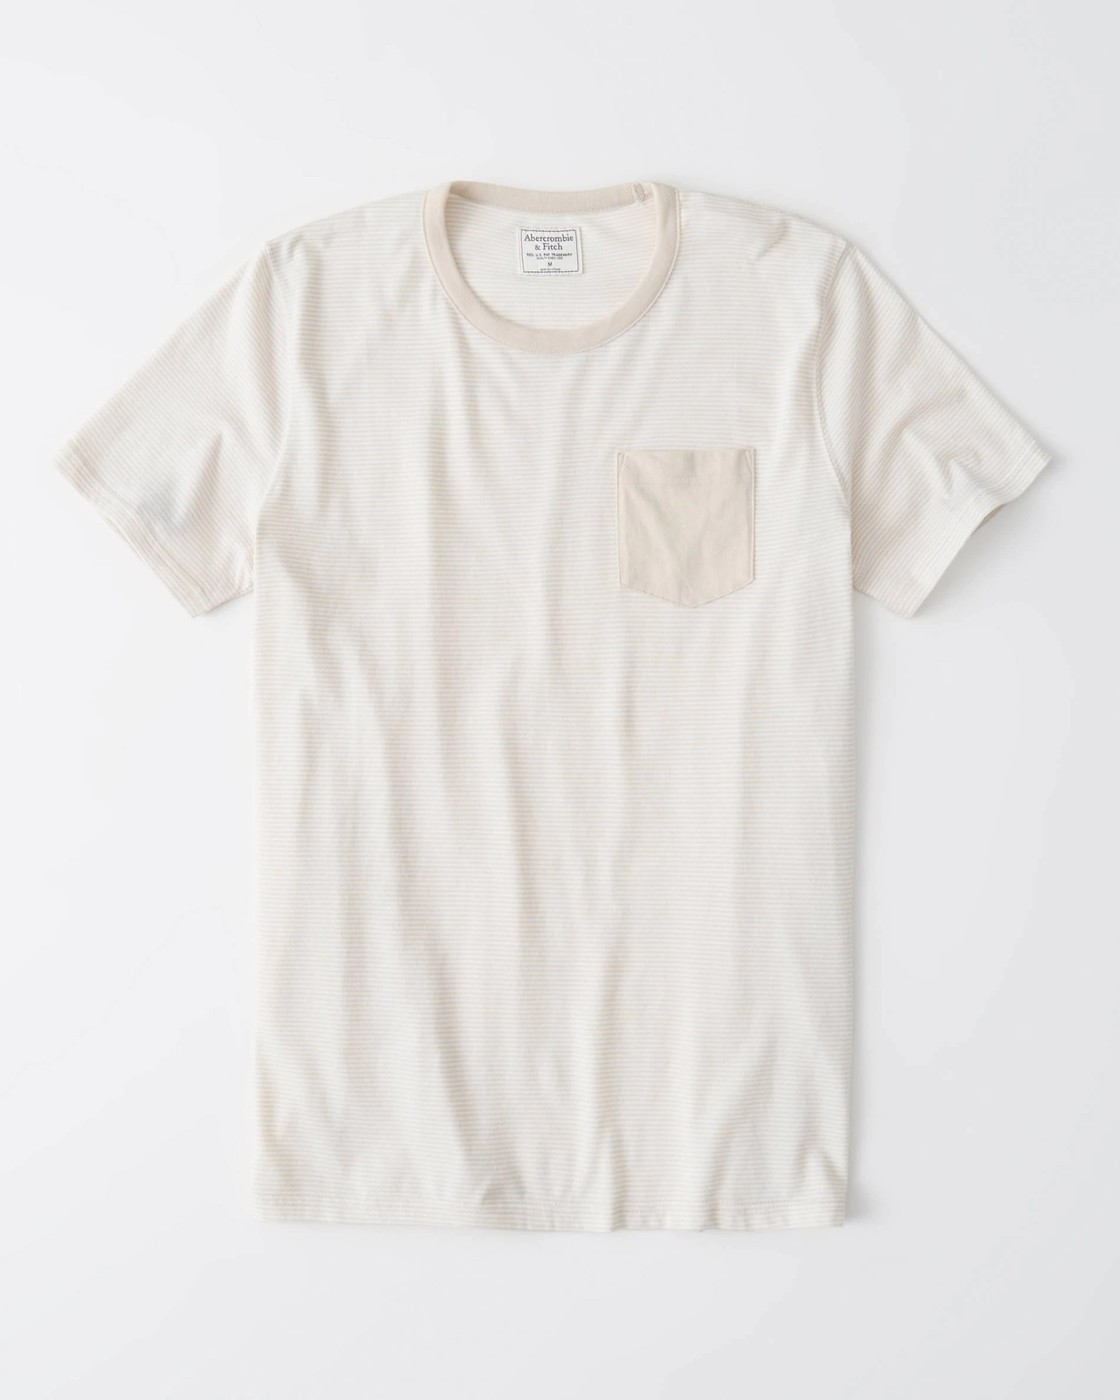 Бежевая футболка - мужская футболка Abercrombie & Fitch, XXL, XXL